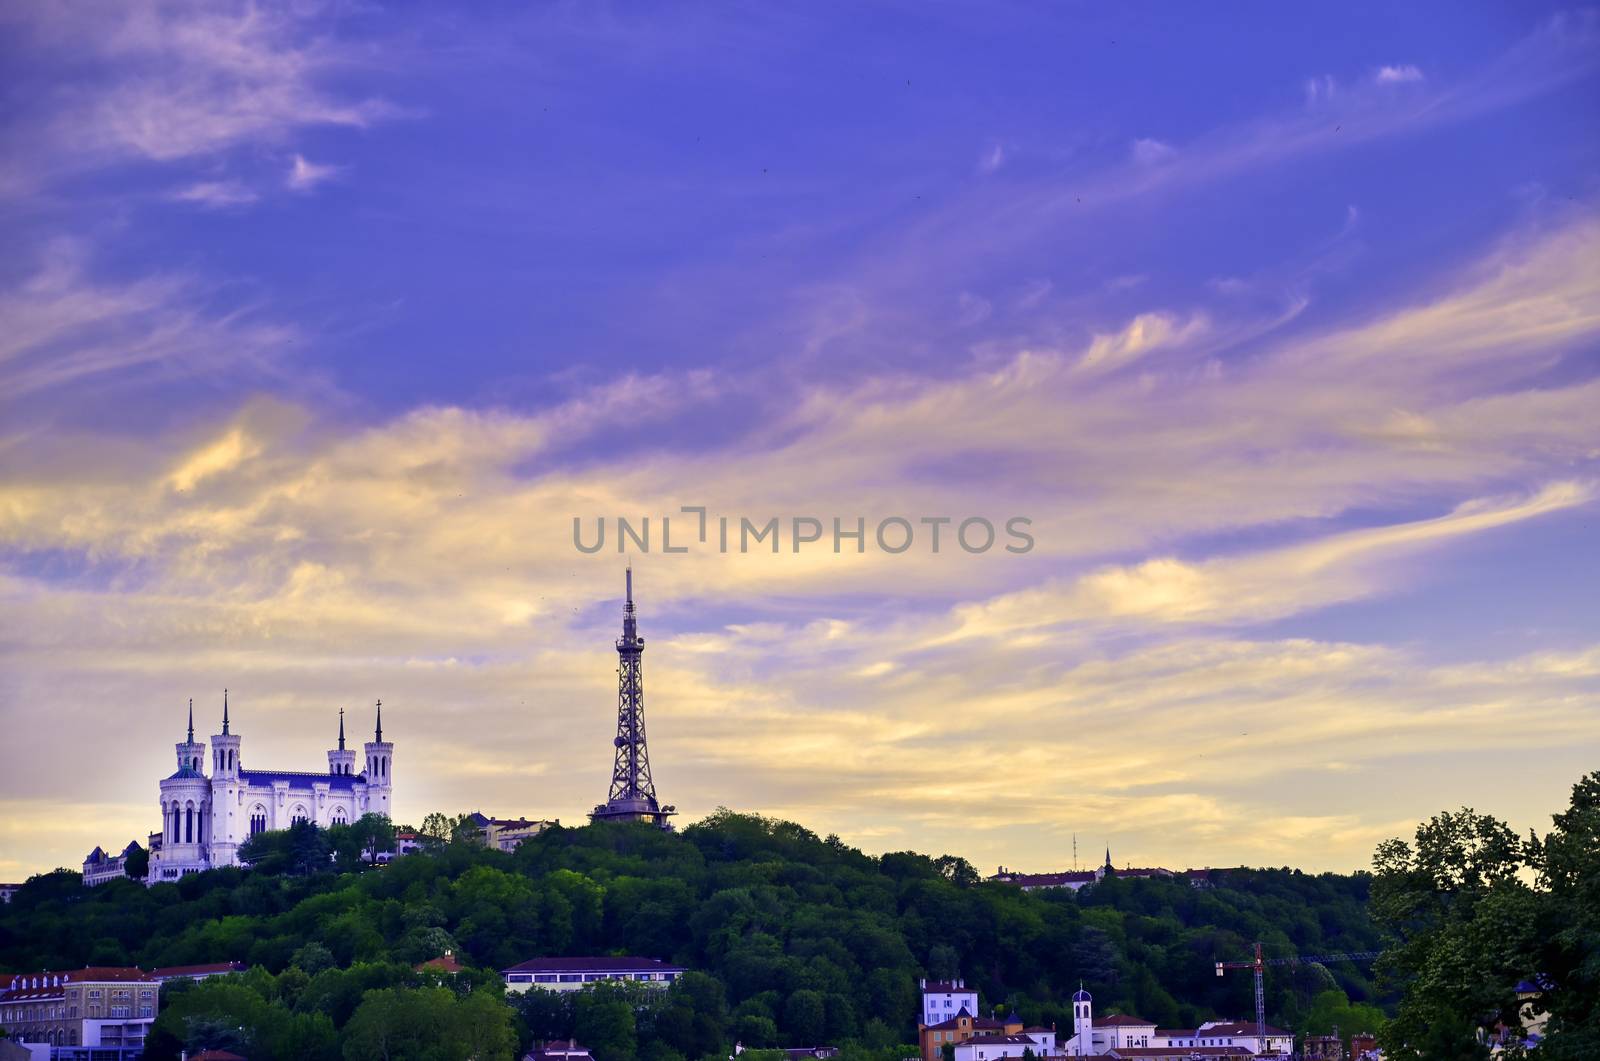 Notre Dame in Lyon, France by jbyard22